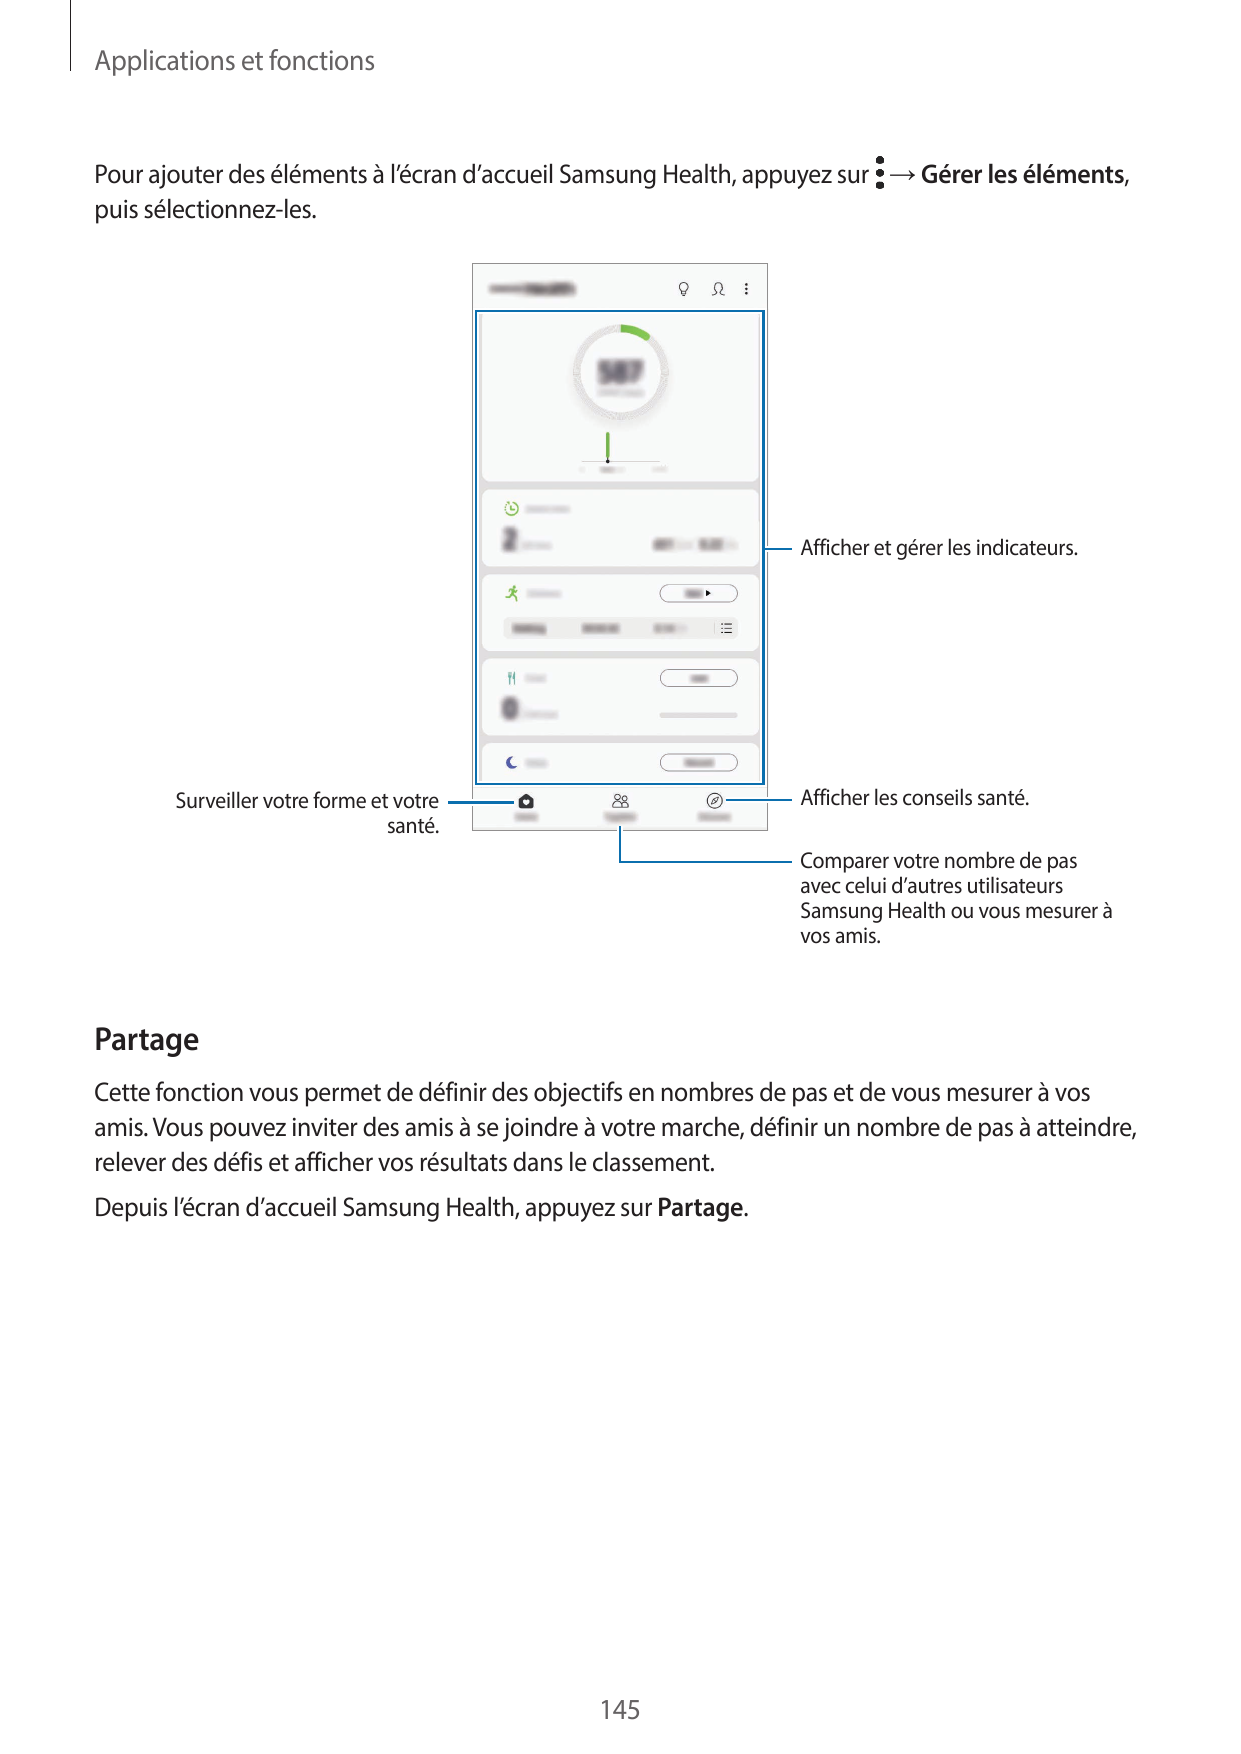 Applications et fonctionsPour ajouter des éléments à l’écran d’accueil Samsung Health, appuyez sur → Gérer les éléments,puis sél